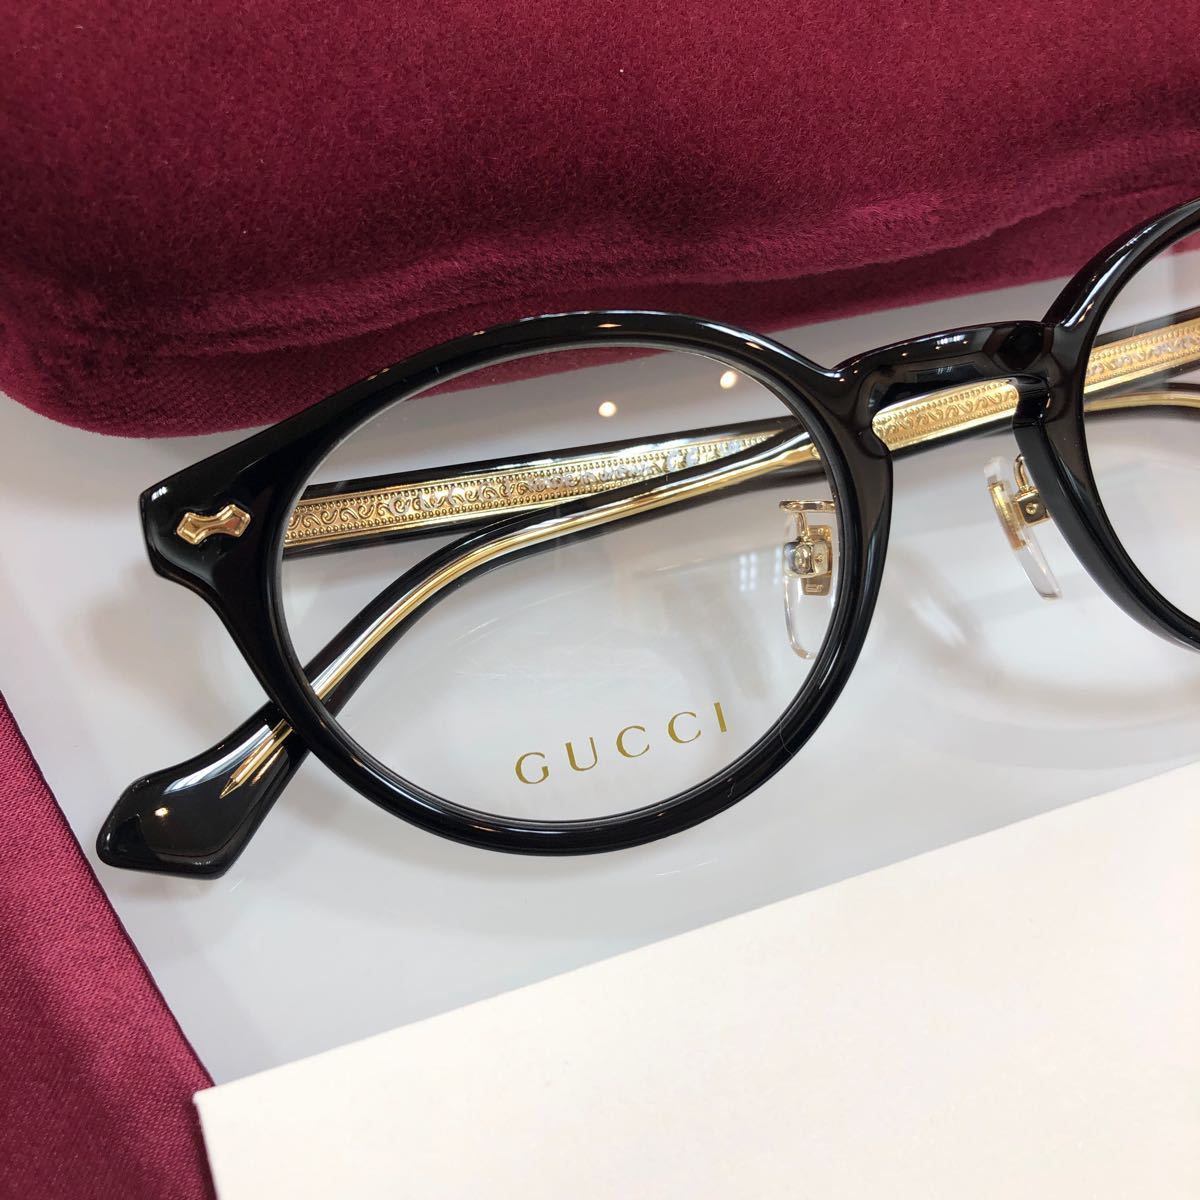  надежный внутренний стандартный товар обычная цена 46,200 иен GUCCI Gucci gucci GG1127OJ 001 GG1127 1127 очки очки внутренний стандартный товар GG с футляром стандартный товар новый товар 